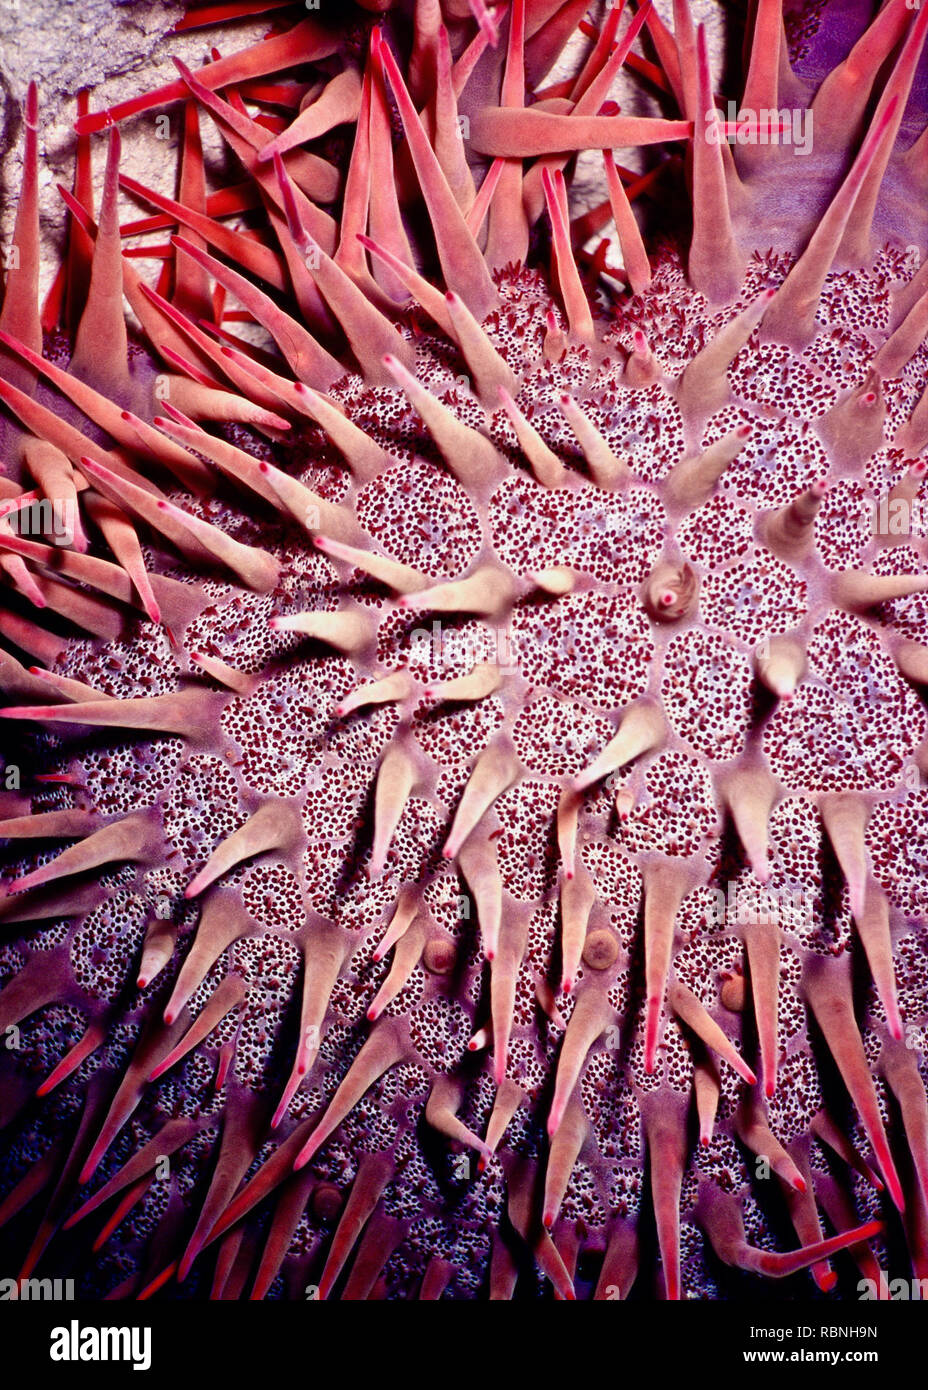 Questo ritratto di close-up di parte di una corona di spine starfish (Acanthaster planci) mostra la sua estremamente forte rosso con punta di aculei velenosi, ciascuno di circa 3 cm in lunghezza. L'animale della sorprendente aspetto ed elevata visibilità per servire come un avvertimento per i potenziali predatori che tenta di mangiare ne risulterebbe molto dolorose ferite. La specie è presente ampiamente nell'Indo-Pacifico regione, compreso il Mare Rosso dove ho preso l'immagine. Questi starfish mangiare coralli duri con voracità e, quando in alta densità, può provocare un significativo degrado reef - a volte intere sezioni di reef può essere ridotta in macerie. Foto Stock